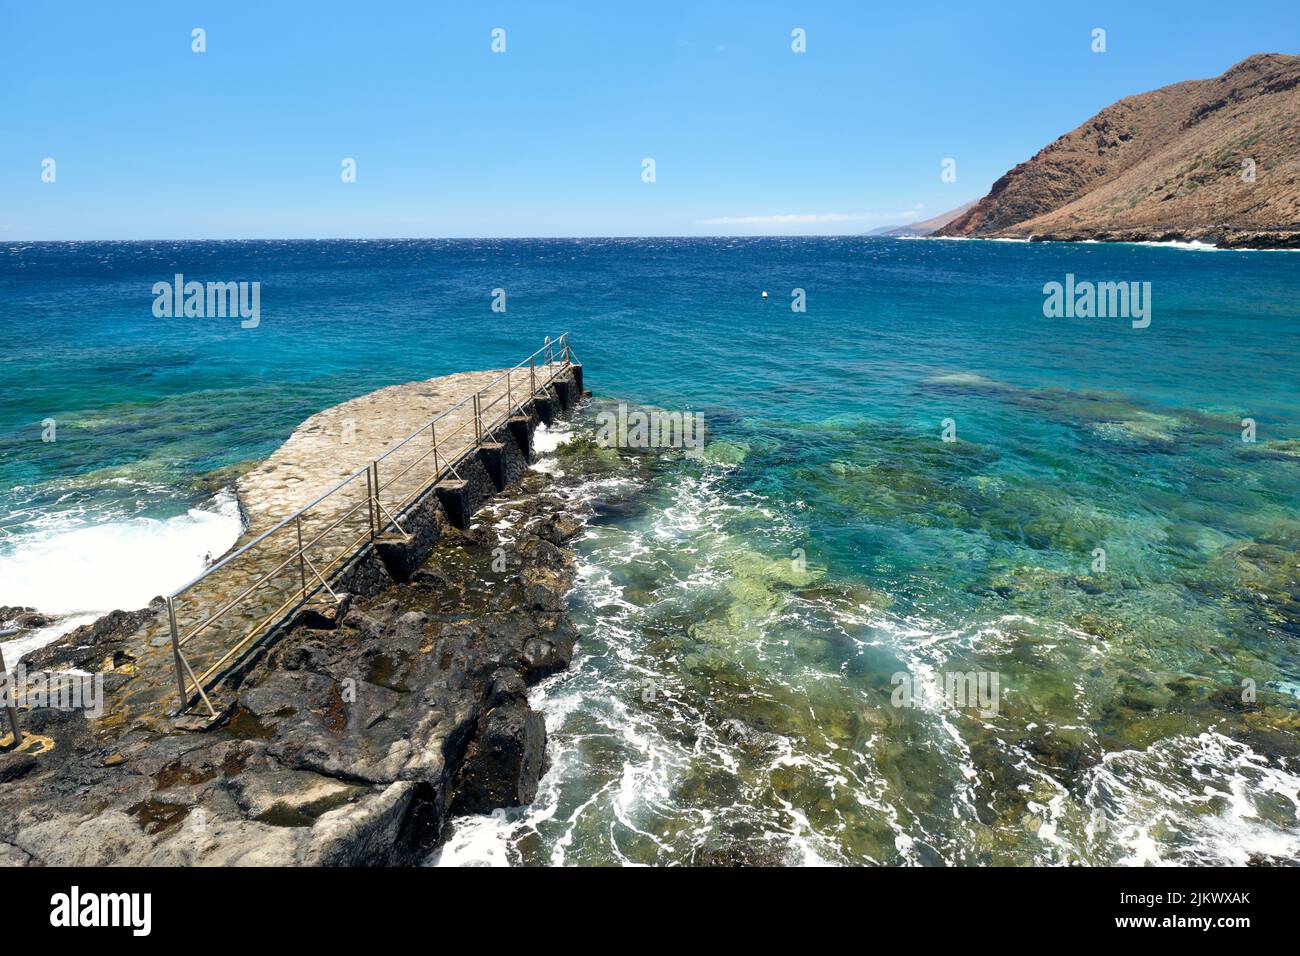 Vue panoramique d'un magnifique site de baignade à la Caleta, sur la côte volcanique d'El Hierro, îles Canaries, baignade dans la mer bleue. Banque D'Images